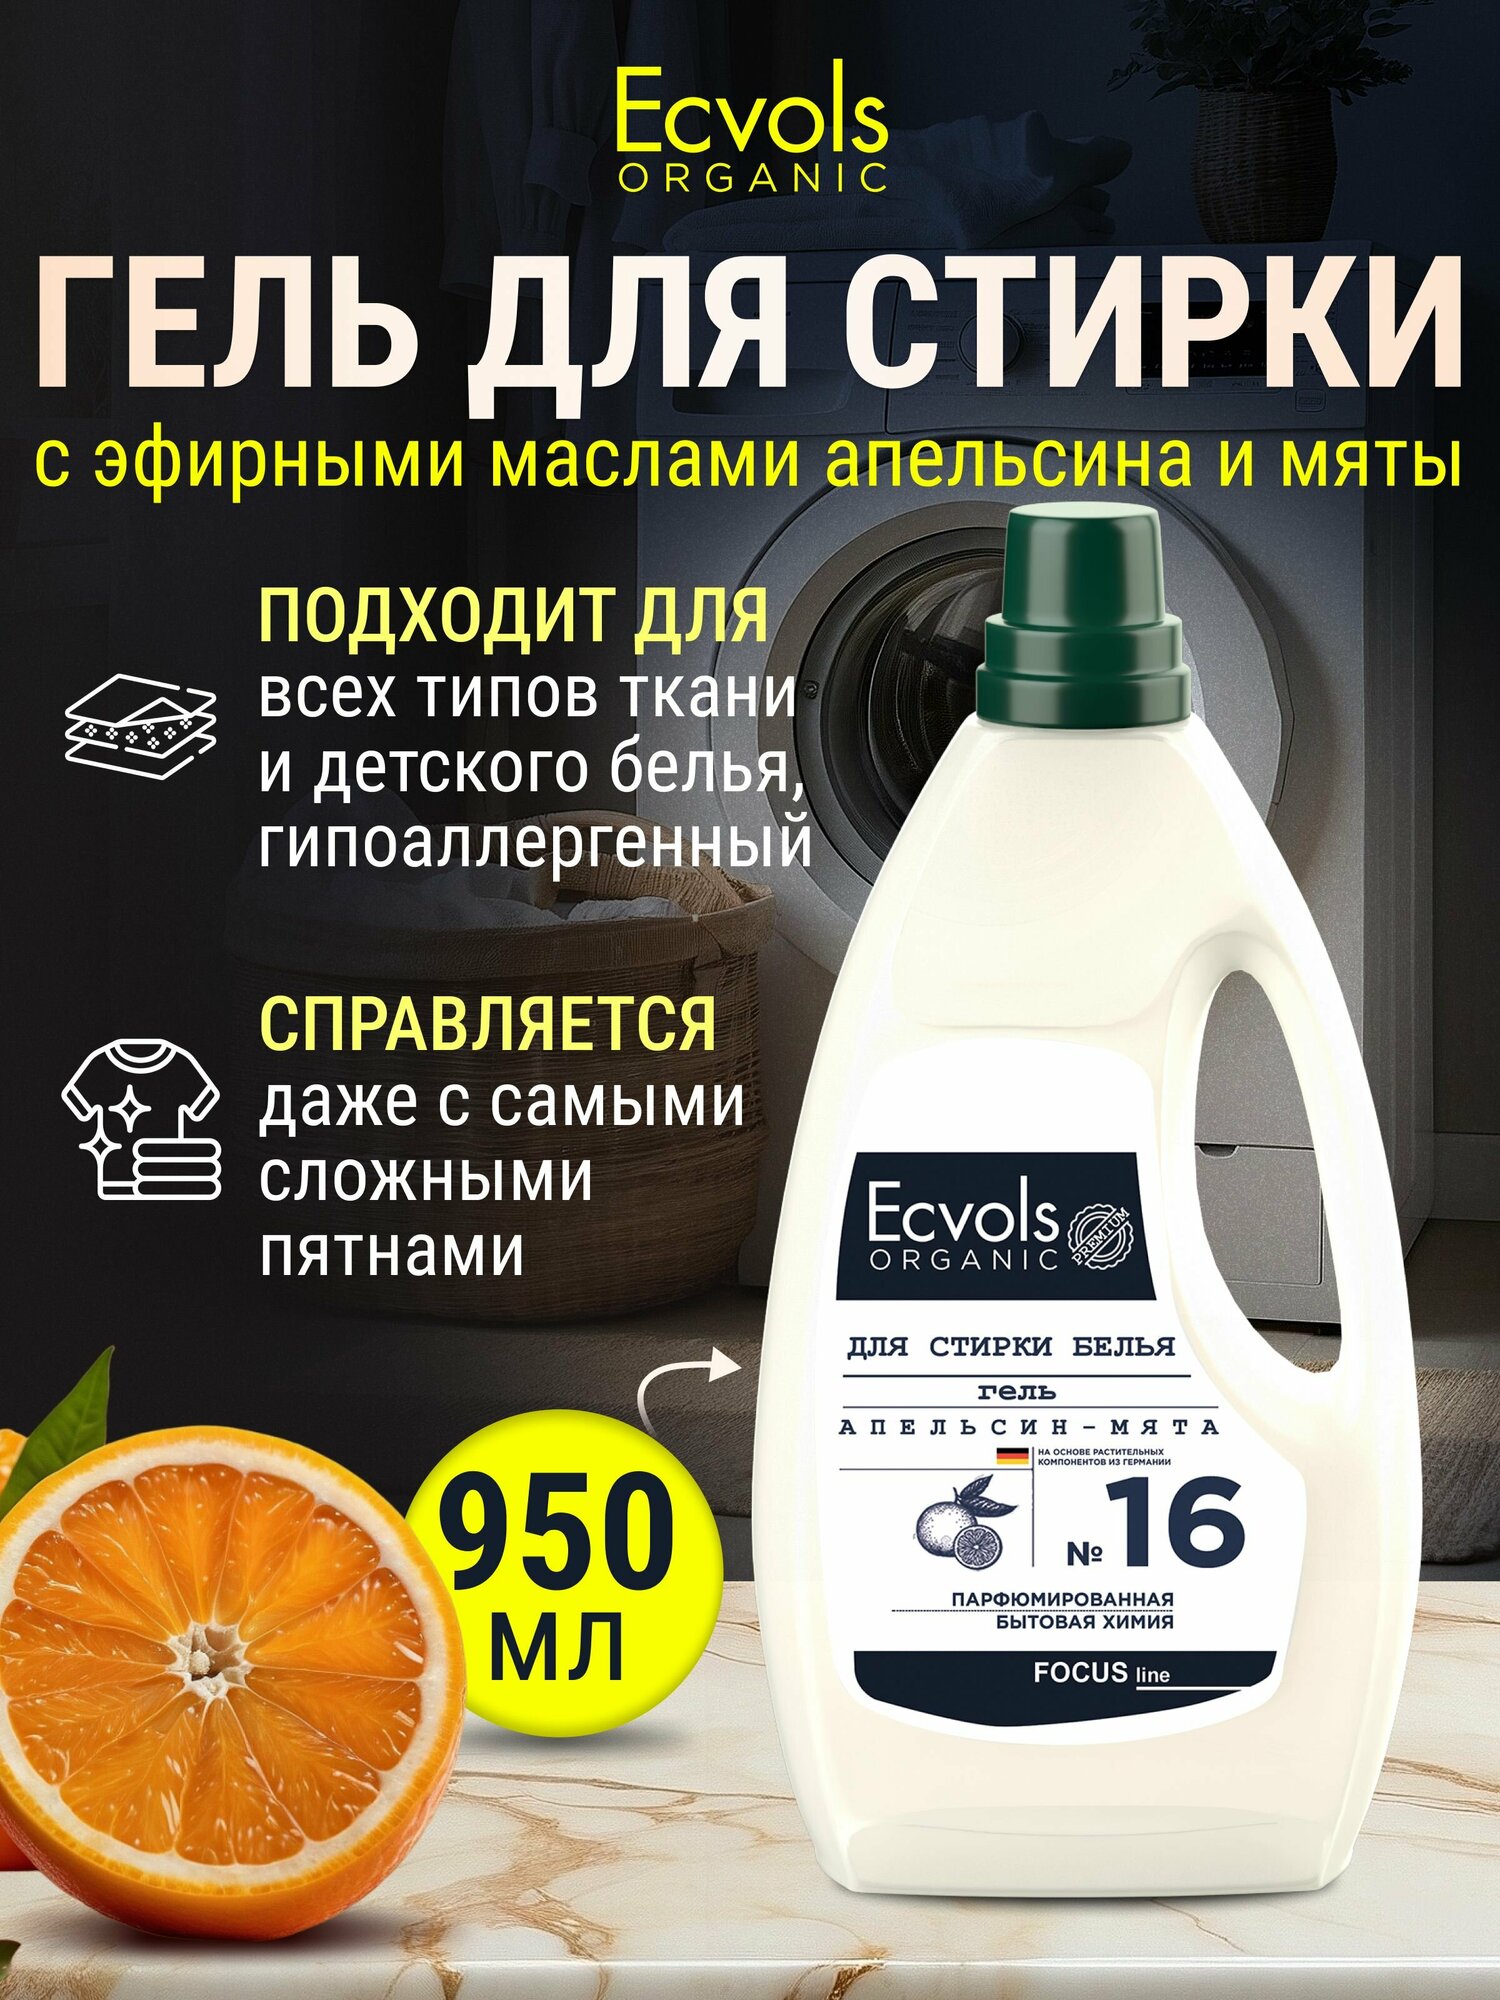 Органический гель для стирки белья универсальный Ecvols Organic Апельсин и мята, 950 мл.